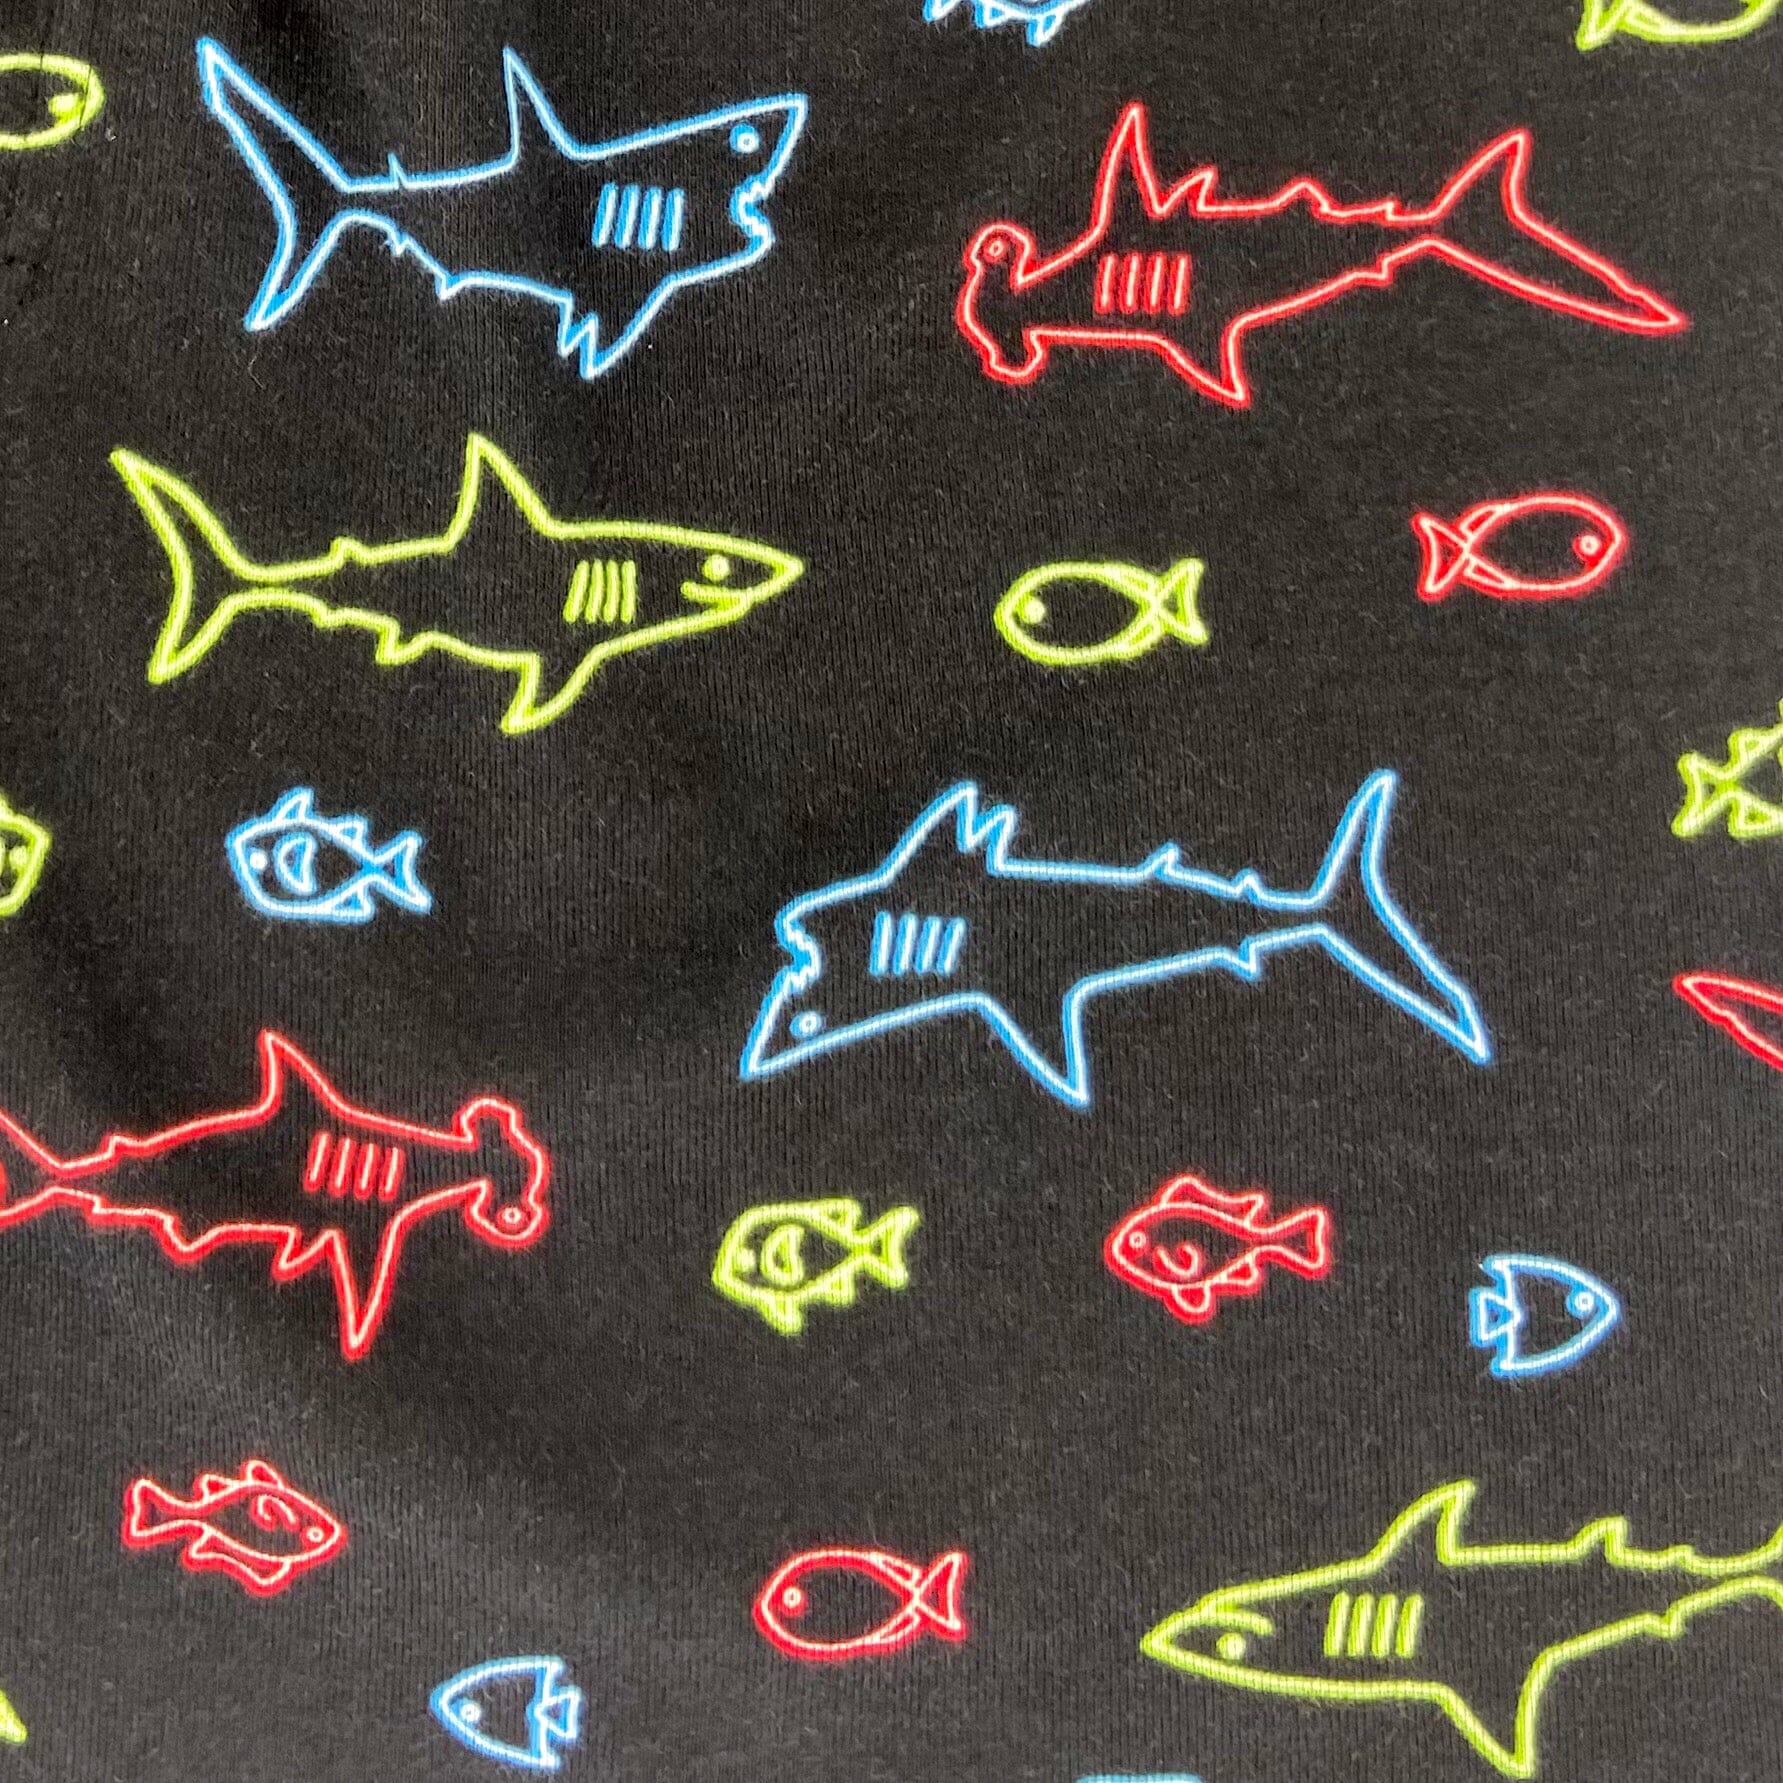 Neon Shark Boxers For Men. Buy Men's Shark Boxer Shorts Here